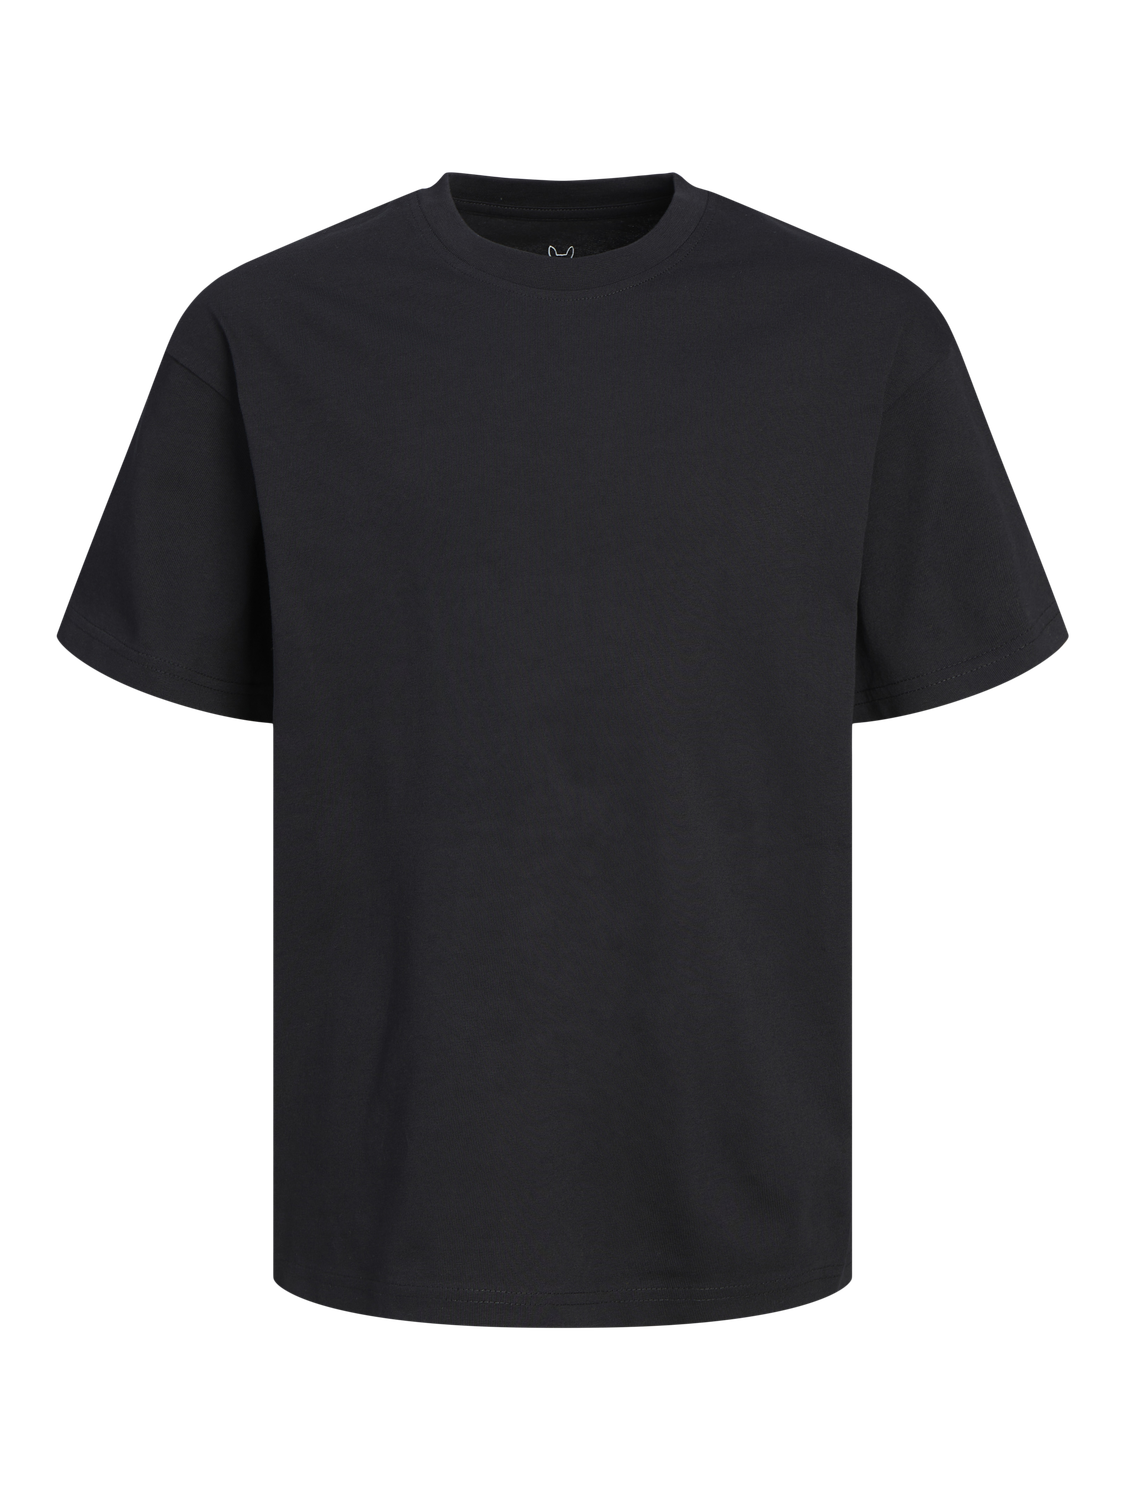 Jack & Jones T-shirt Uni Pour les garçons -Black - 12254288